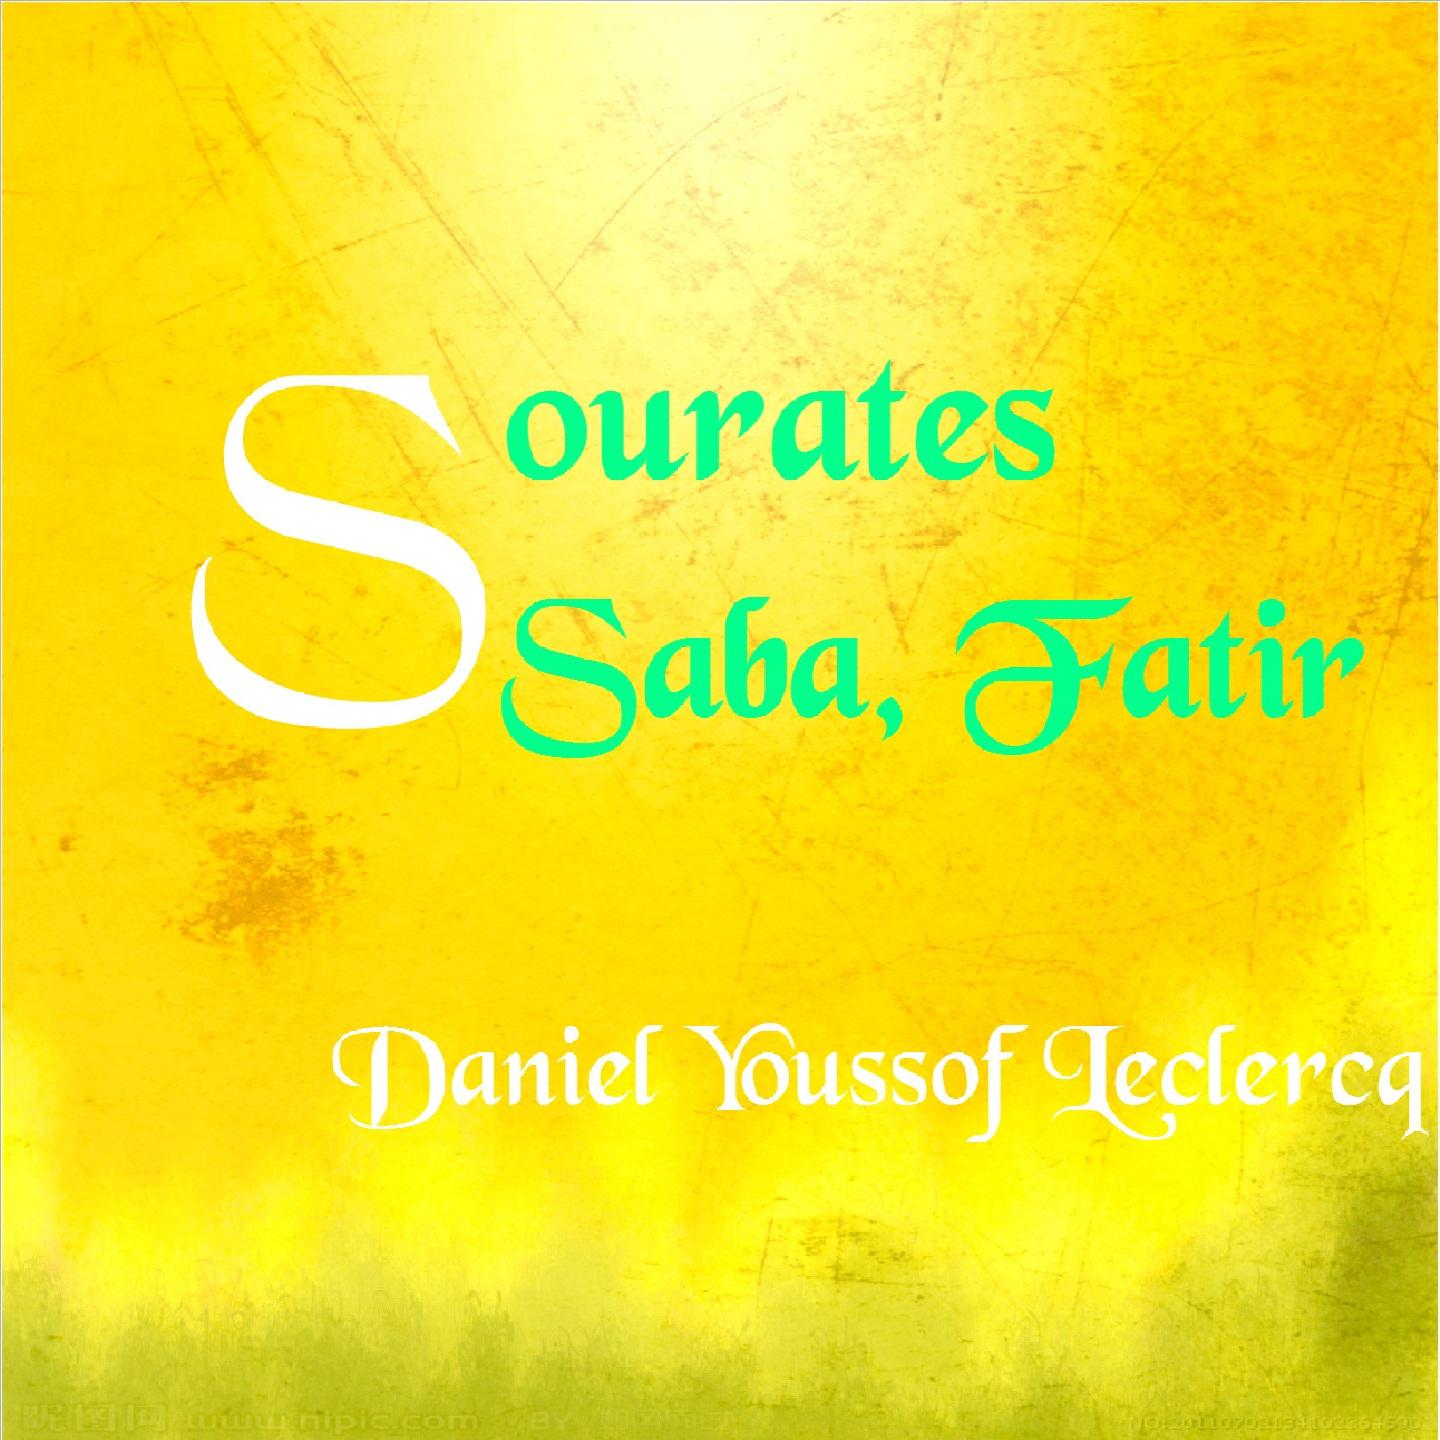 Постер альбома Sourates Saba, Fatir